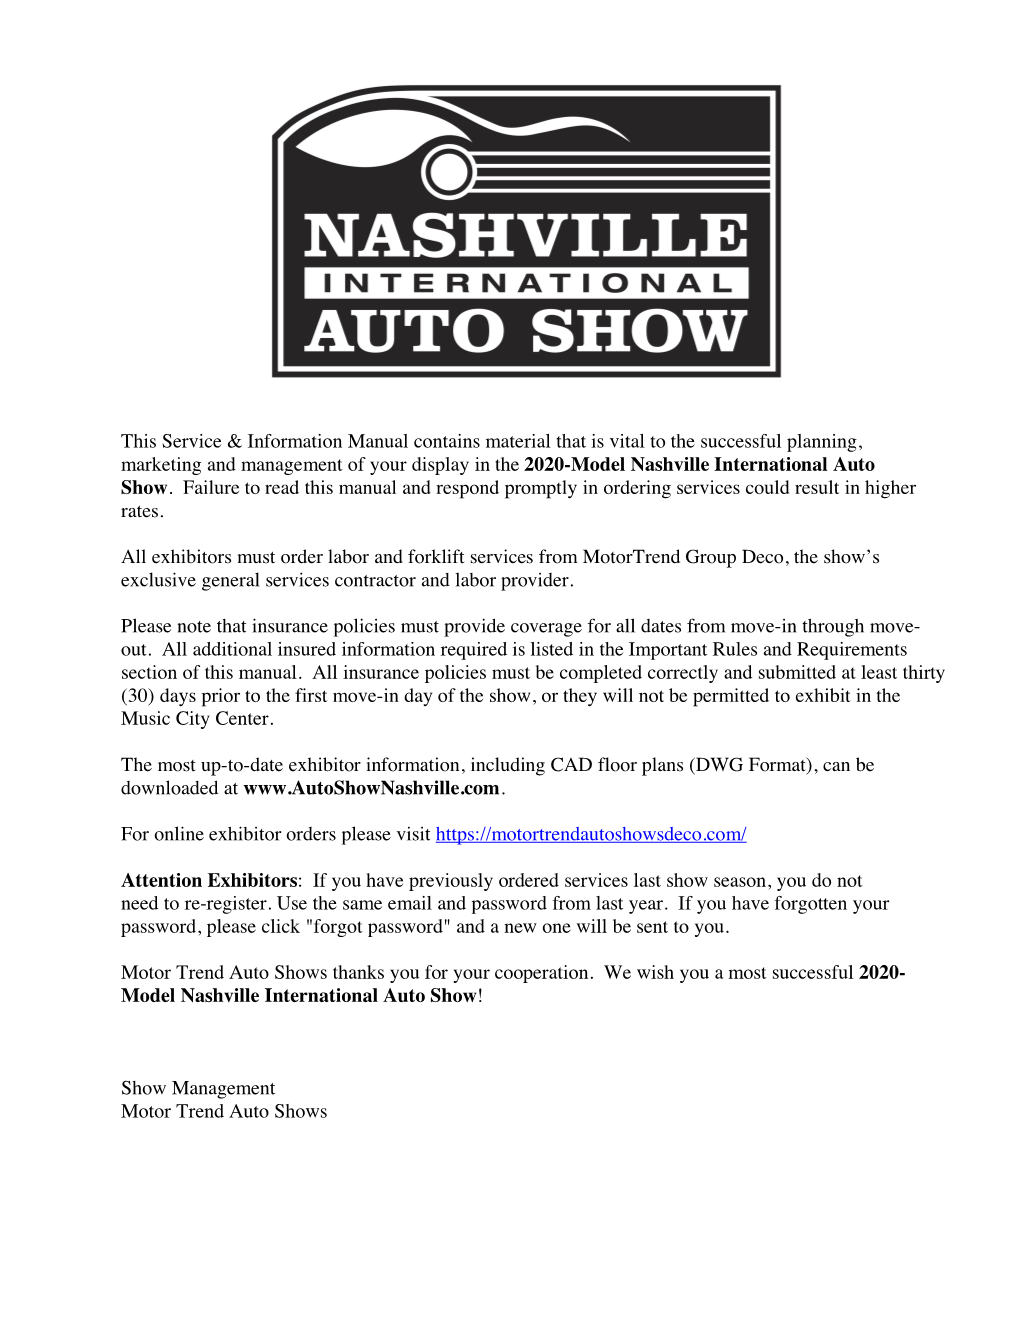 Nashville-Exhibitor Manual 7-18